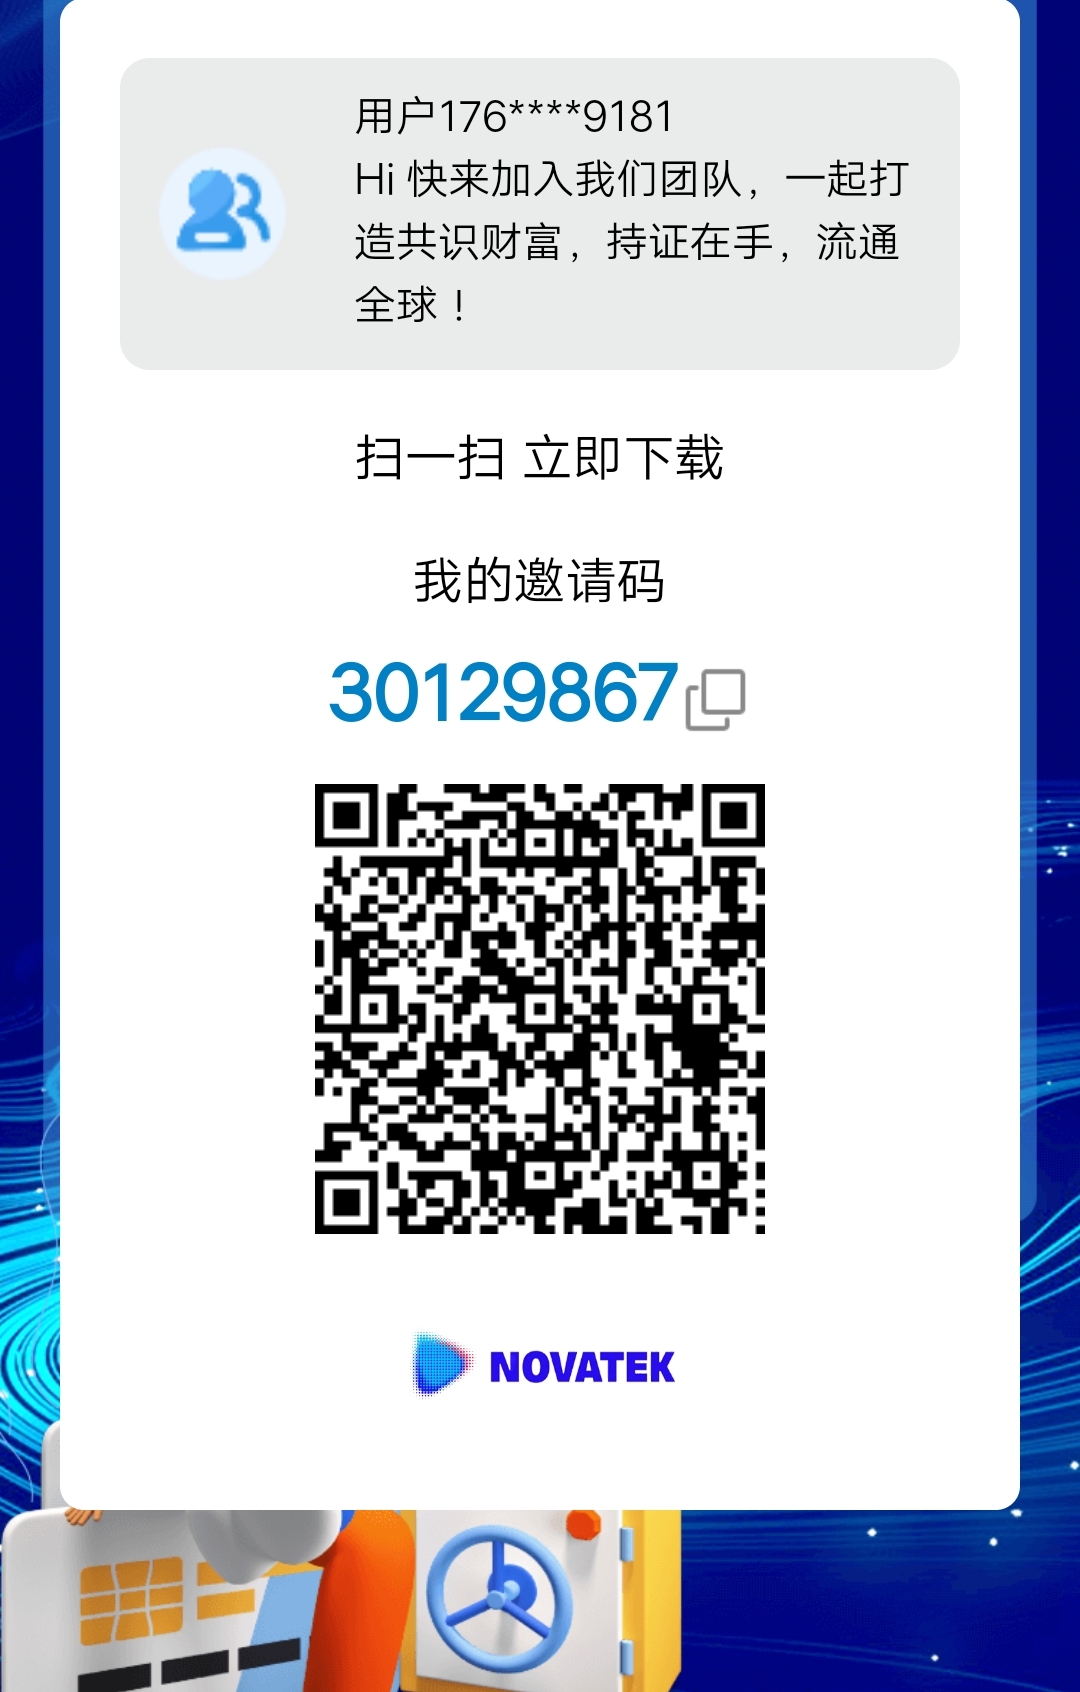 novaeta首码发布，注册就送10u.拉新奖励3u.每天签到送0.5u，给力车！速度上！